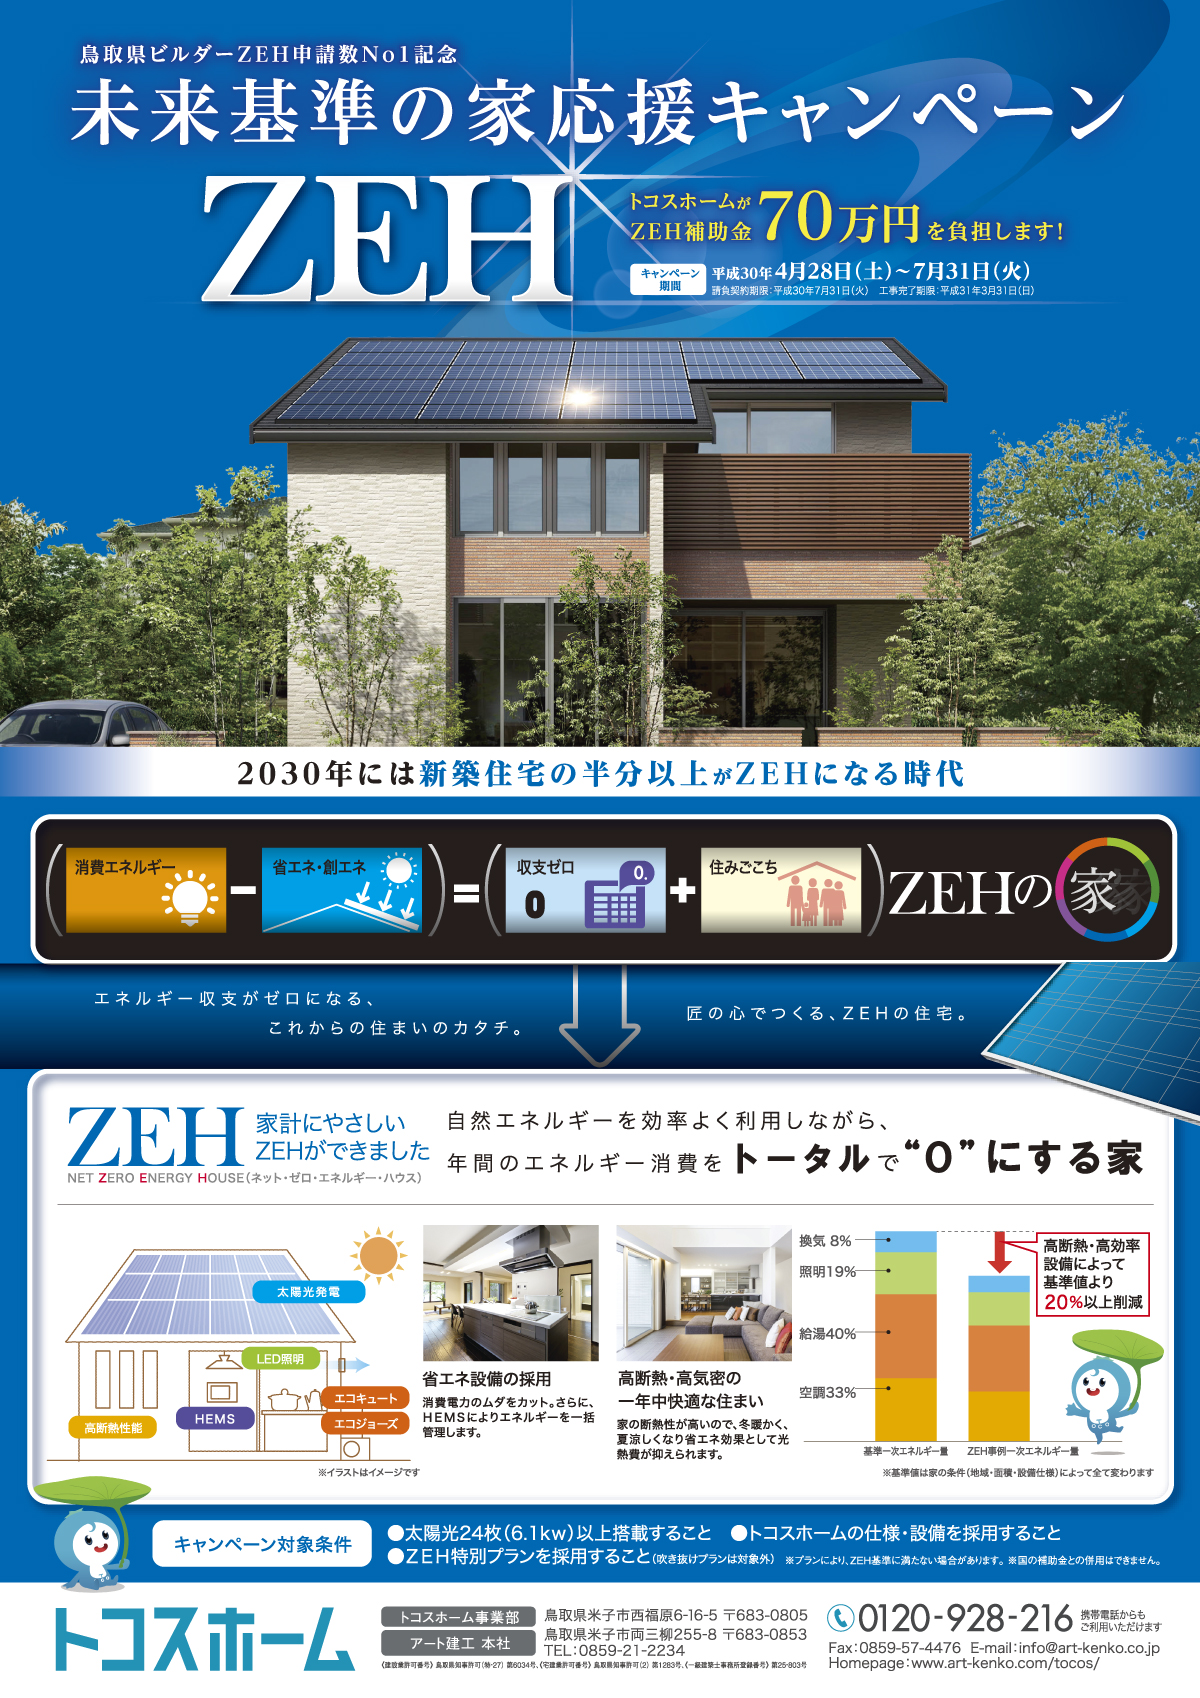 未来基準の家応援キャンペーン実施中 トコスホーム 鳥取 米子 松江 出雲の新築住宅